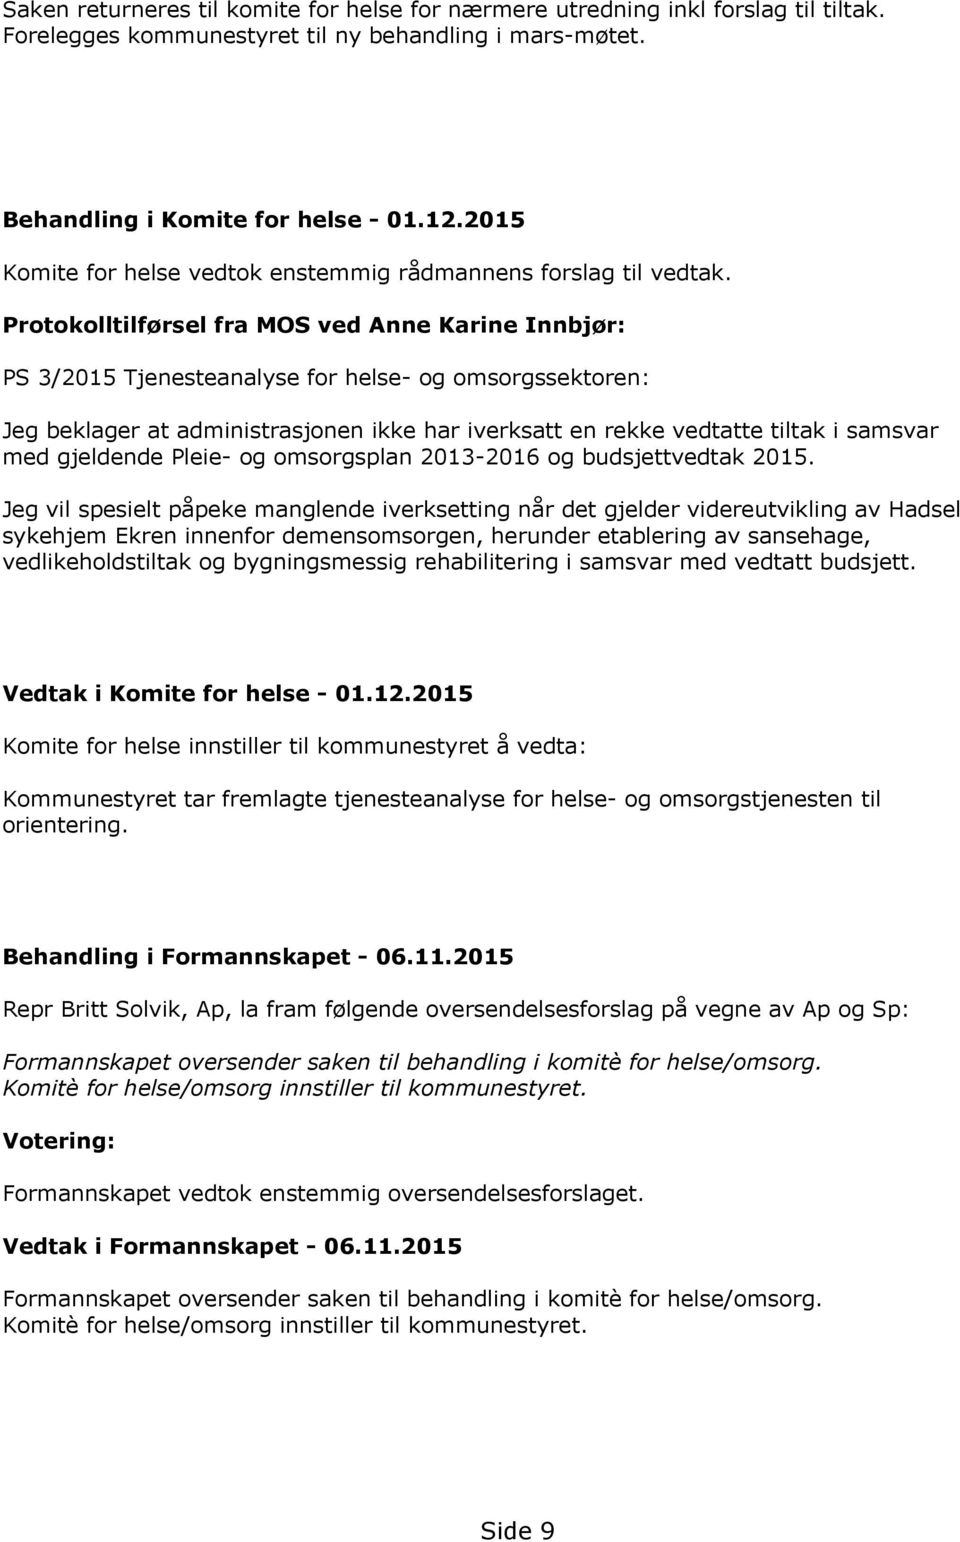 Protokolltilførsel fra MOS ved Anne Karine Innbjør: PS 3/2015 Tjenesteanalyse for helse- og omsorgssektoren: Jeg beklager at administrasjonen ikke har iverksatt en rekke vedtatte tiltak i samsvar med